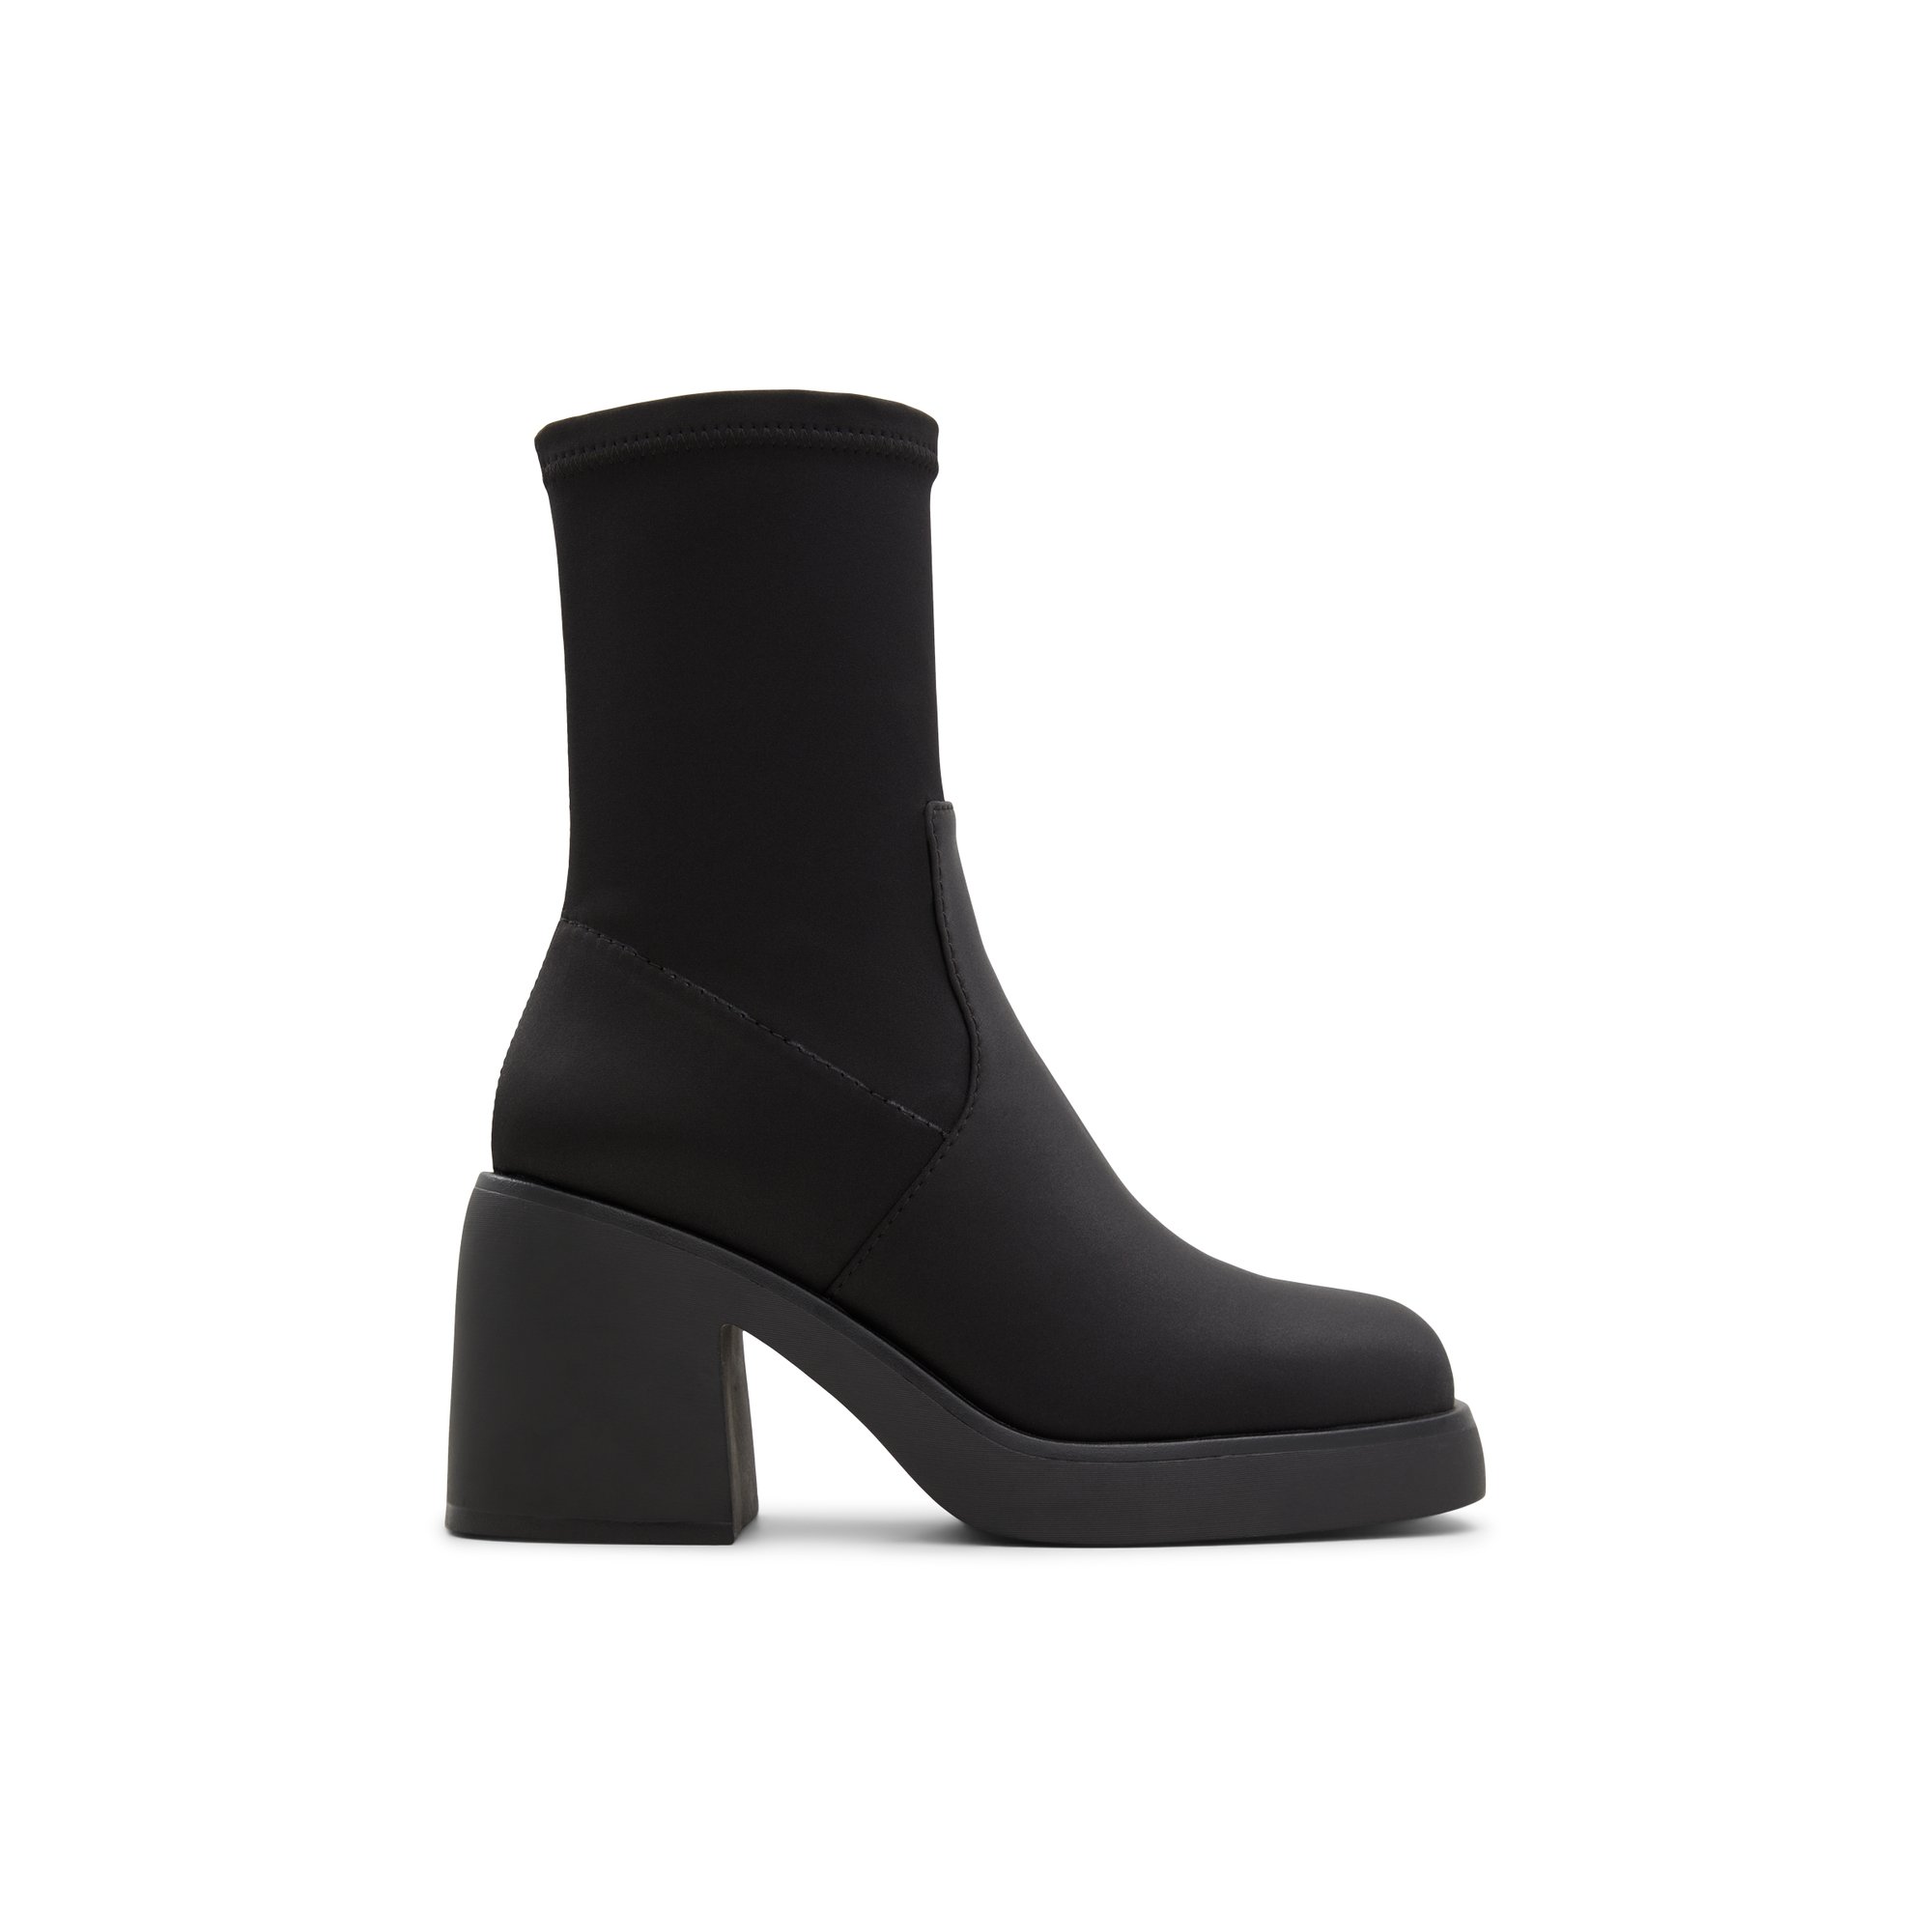 ALDO Persona - Women's Boots Casual - Black